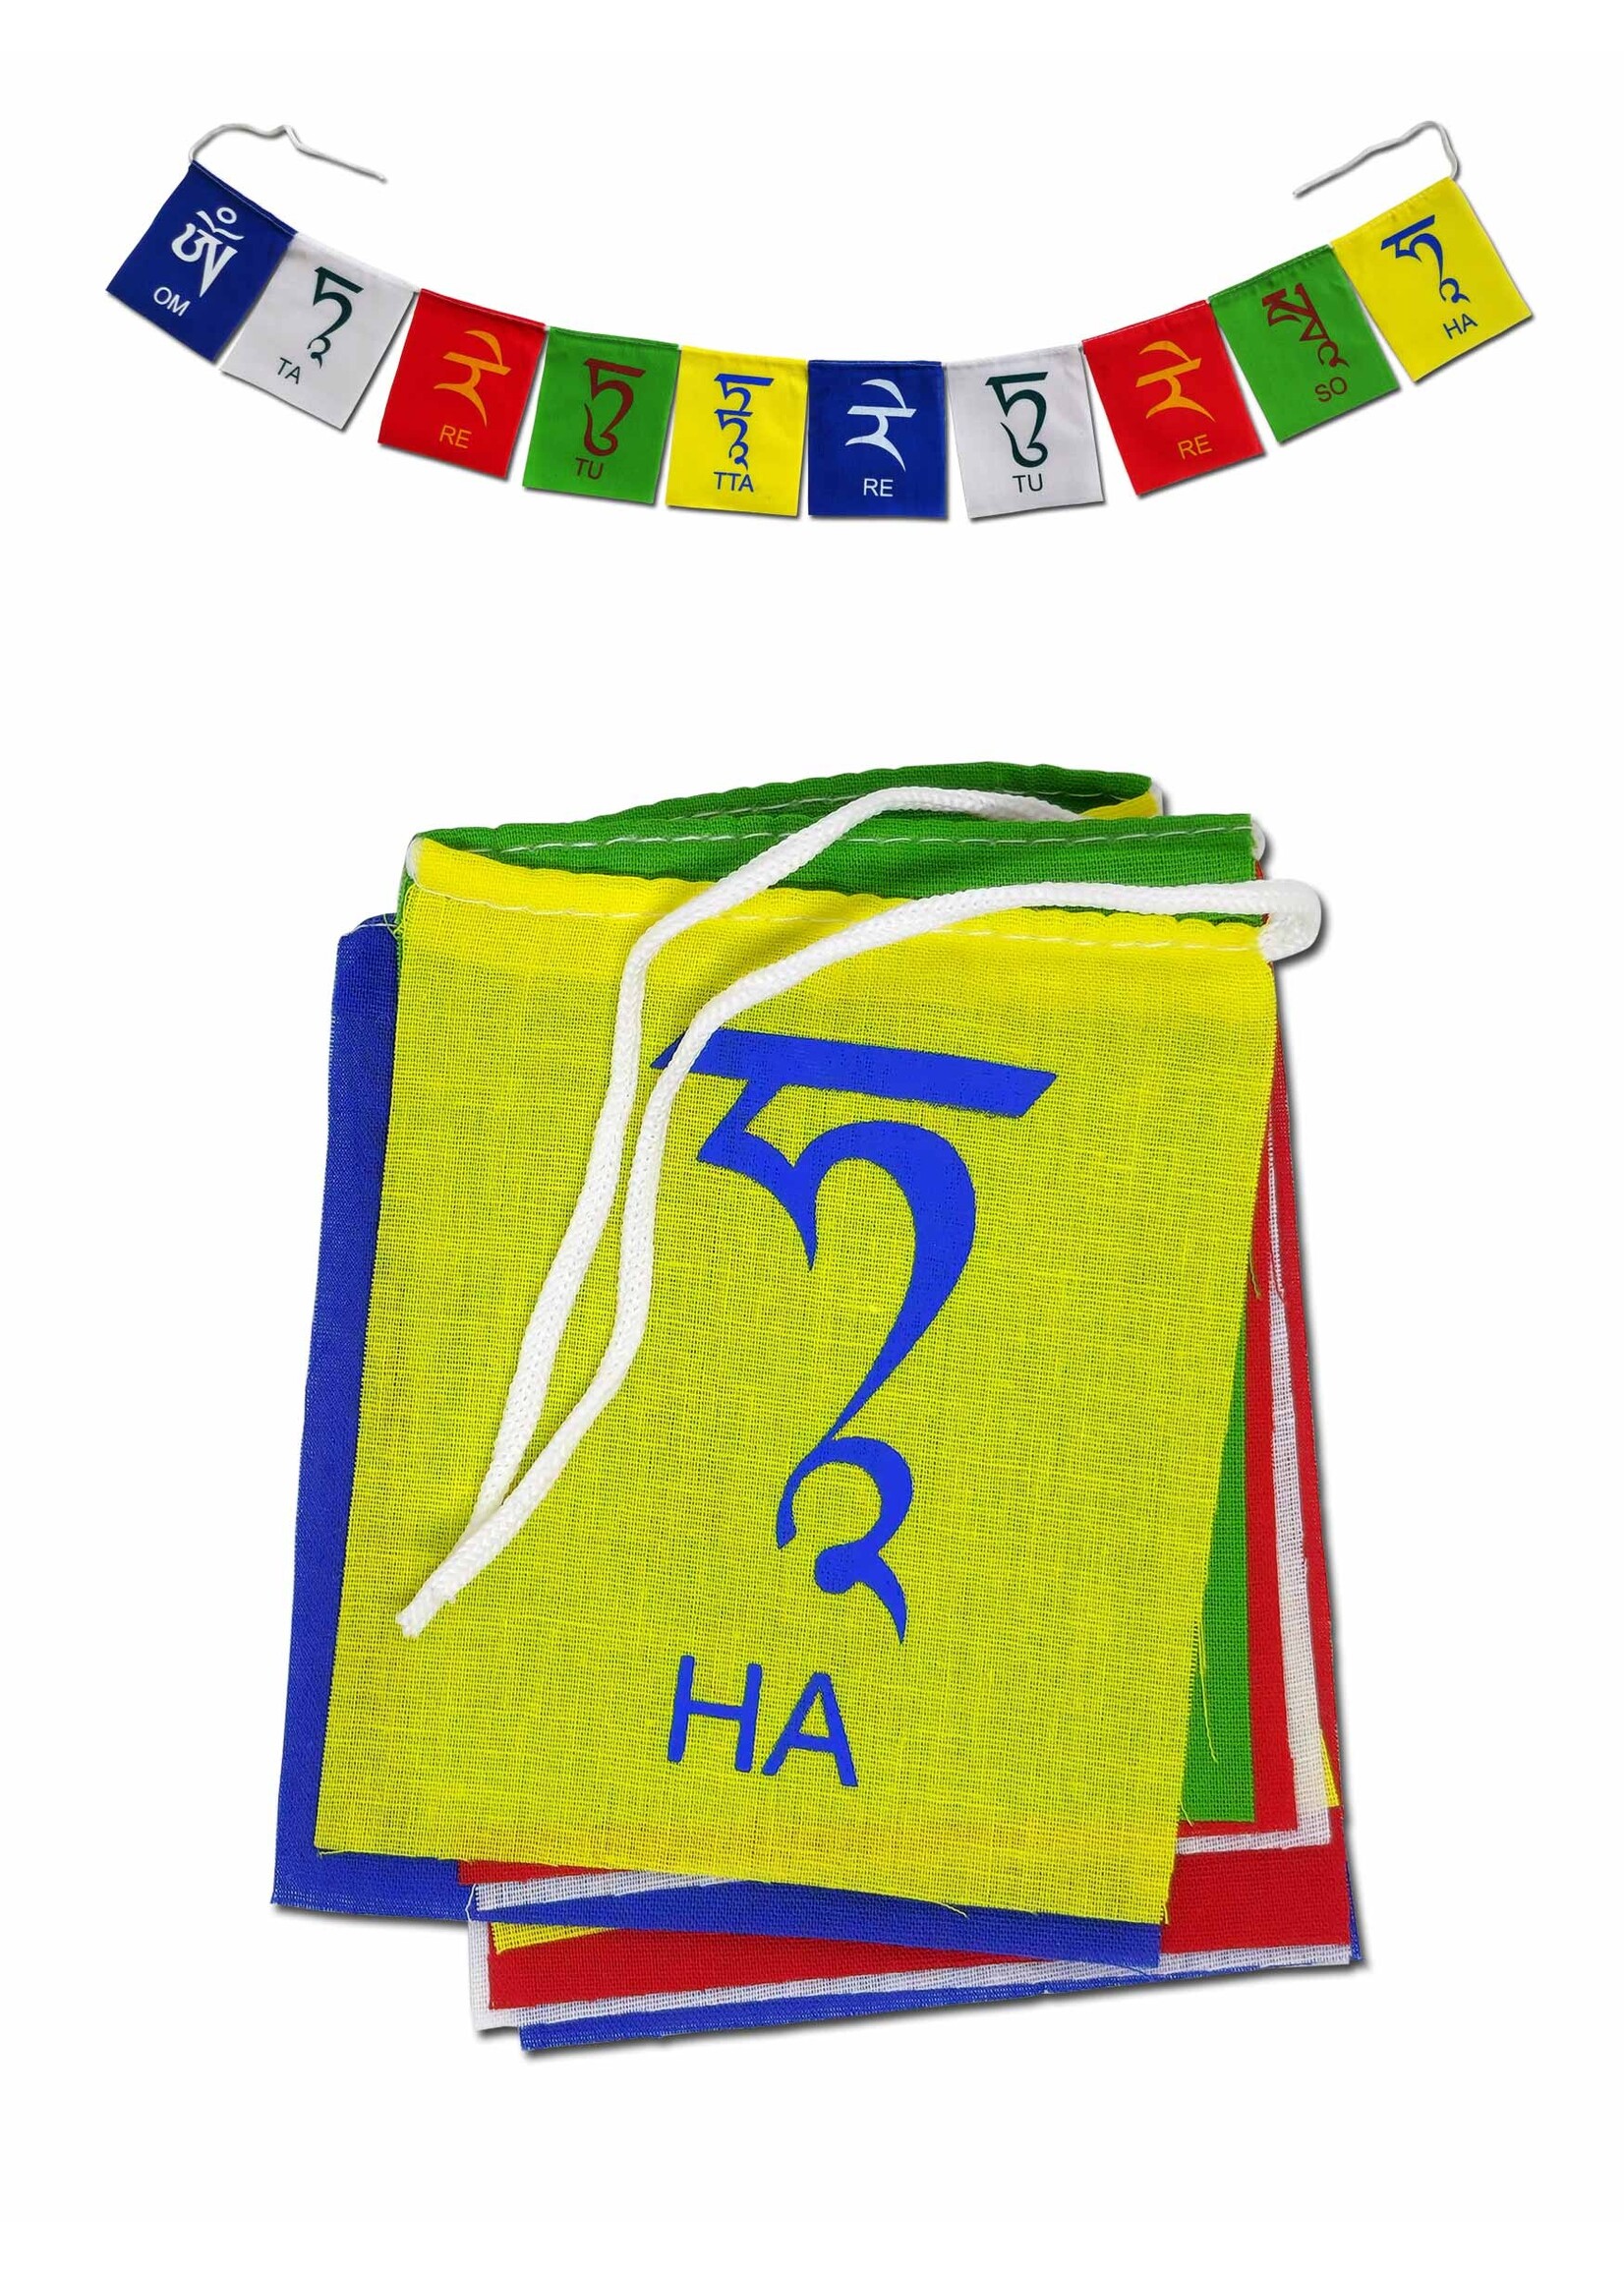 Tibetische Gebetsfahne Tara Mantra, 9 x 10.5 cm